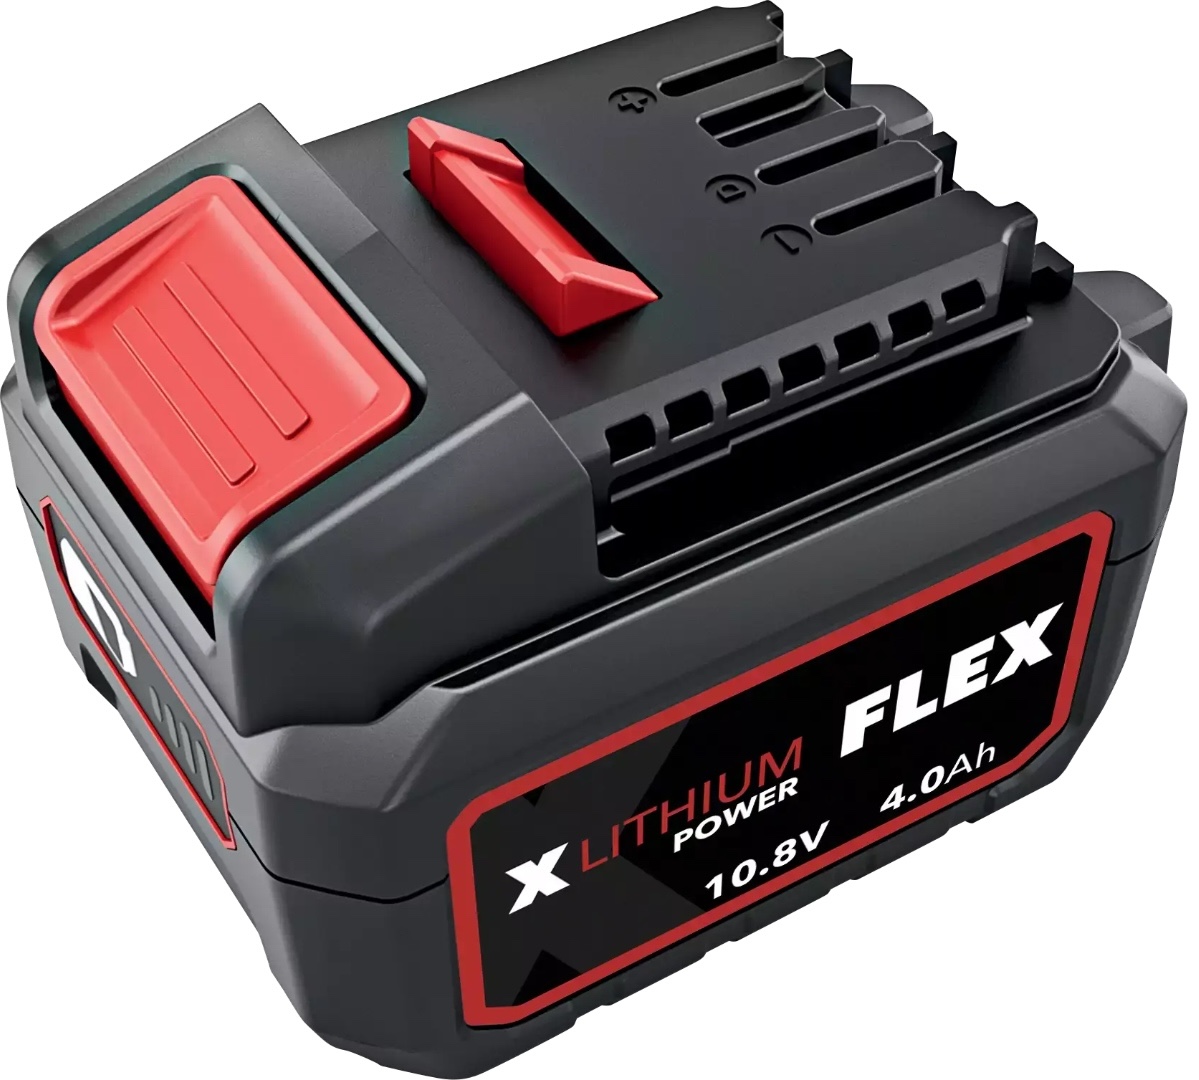 Аккумулятор Flex AP 10.8 / 4.0 Li-Ion 439657 аккумулятор flex ap 10 8 4 0 li ion 439657